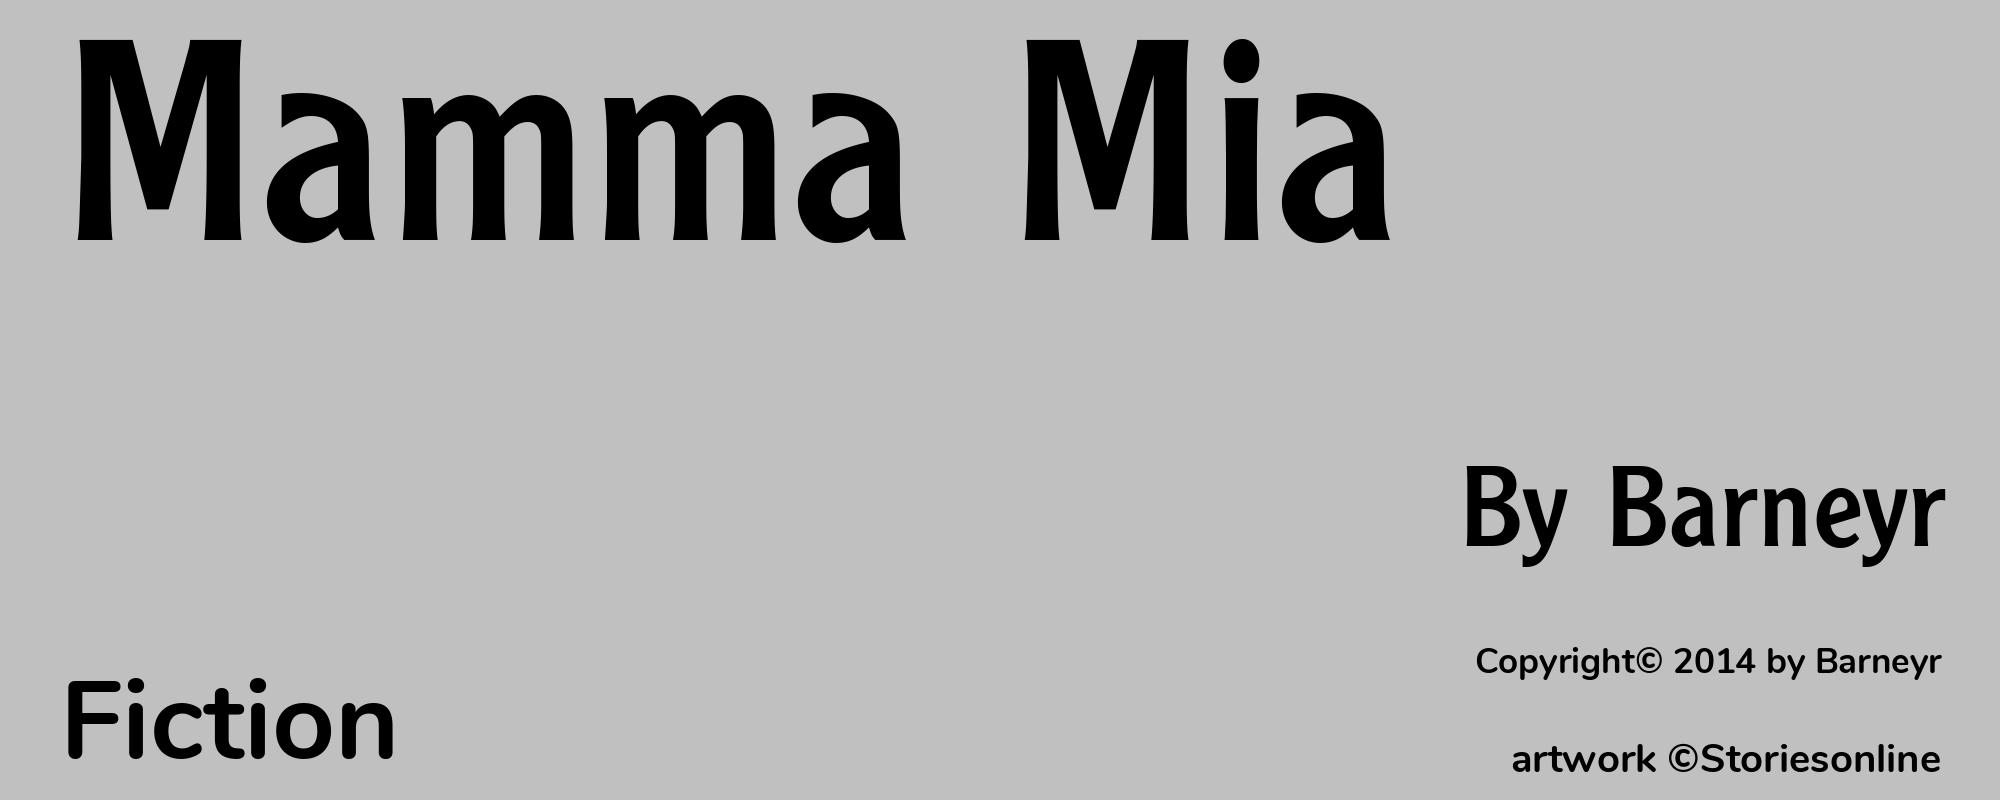 Mamma Mia - Cover